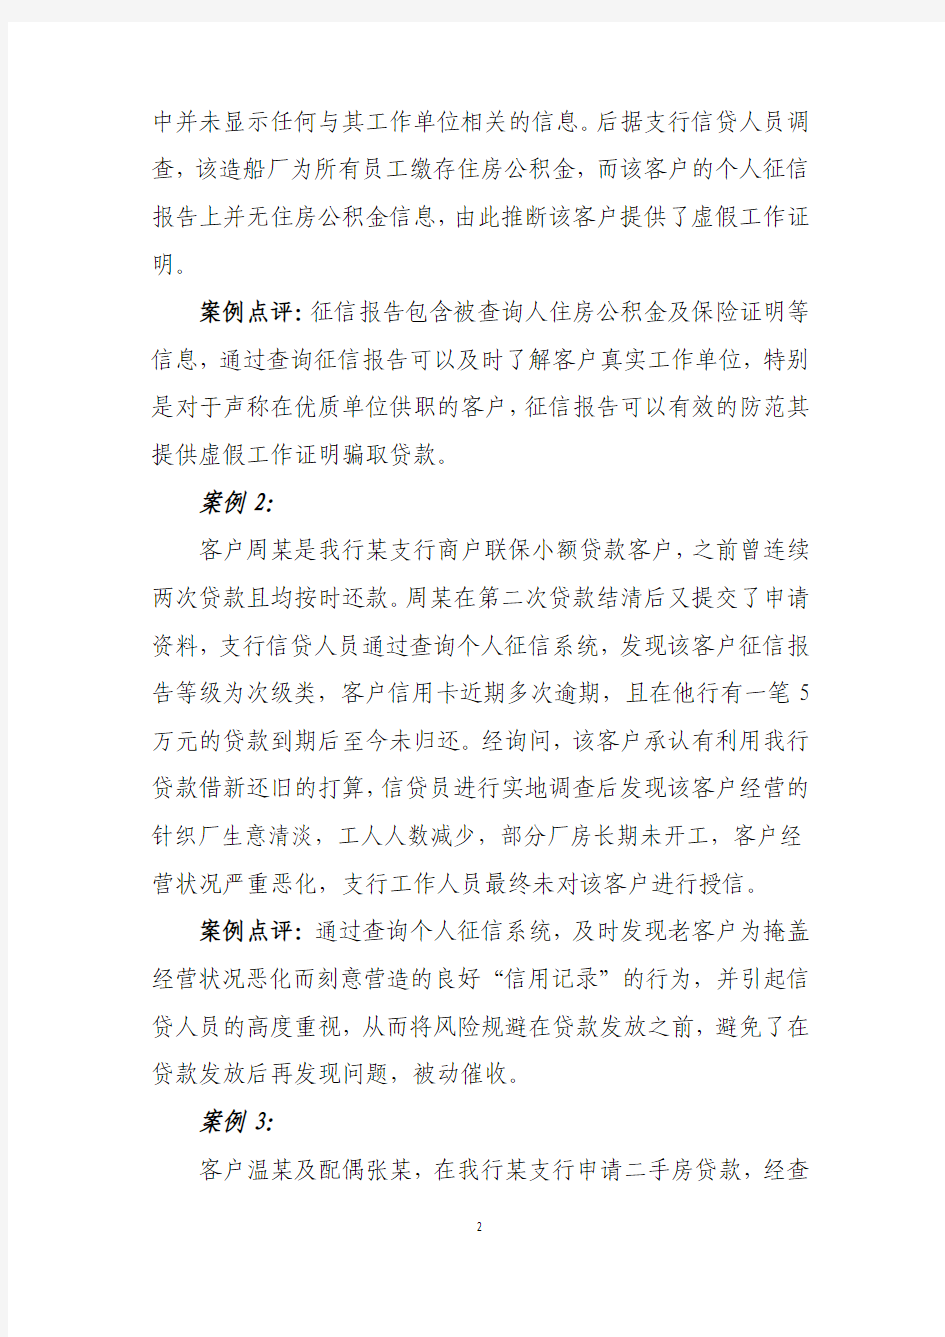 中国邮政储蓄银行2010年第四季度征信系统应用成效典型案例 精品